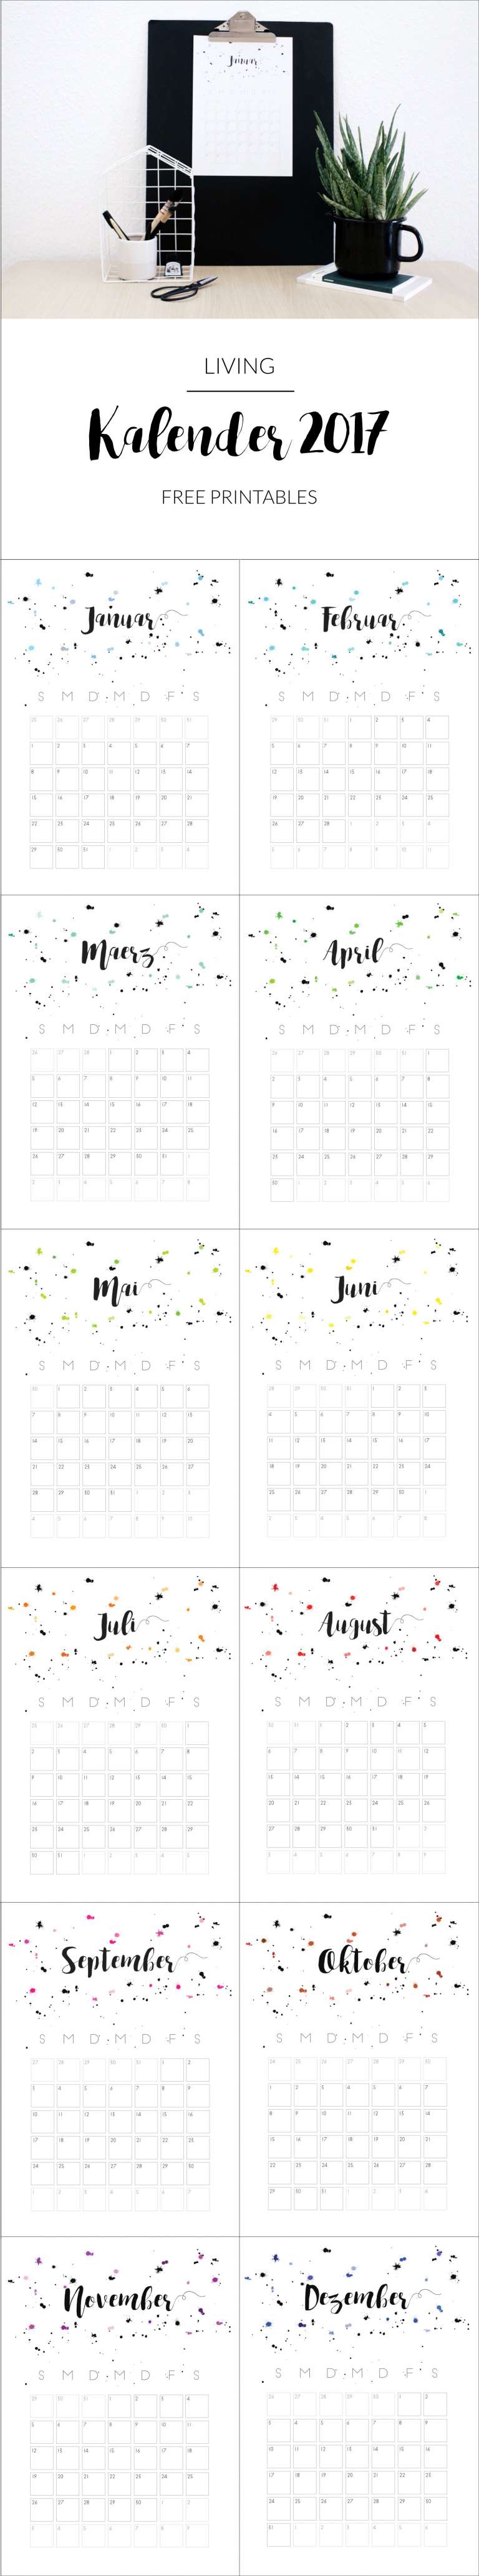 Kalender 2017 Pinterest Grafik